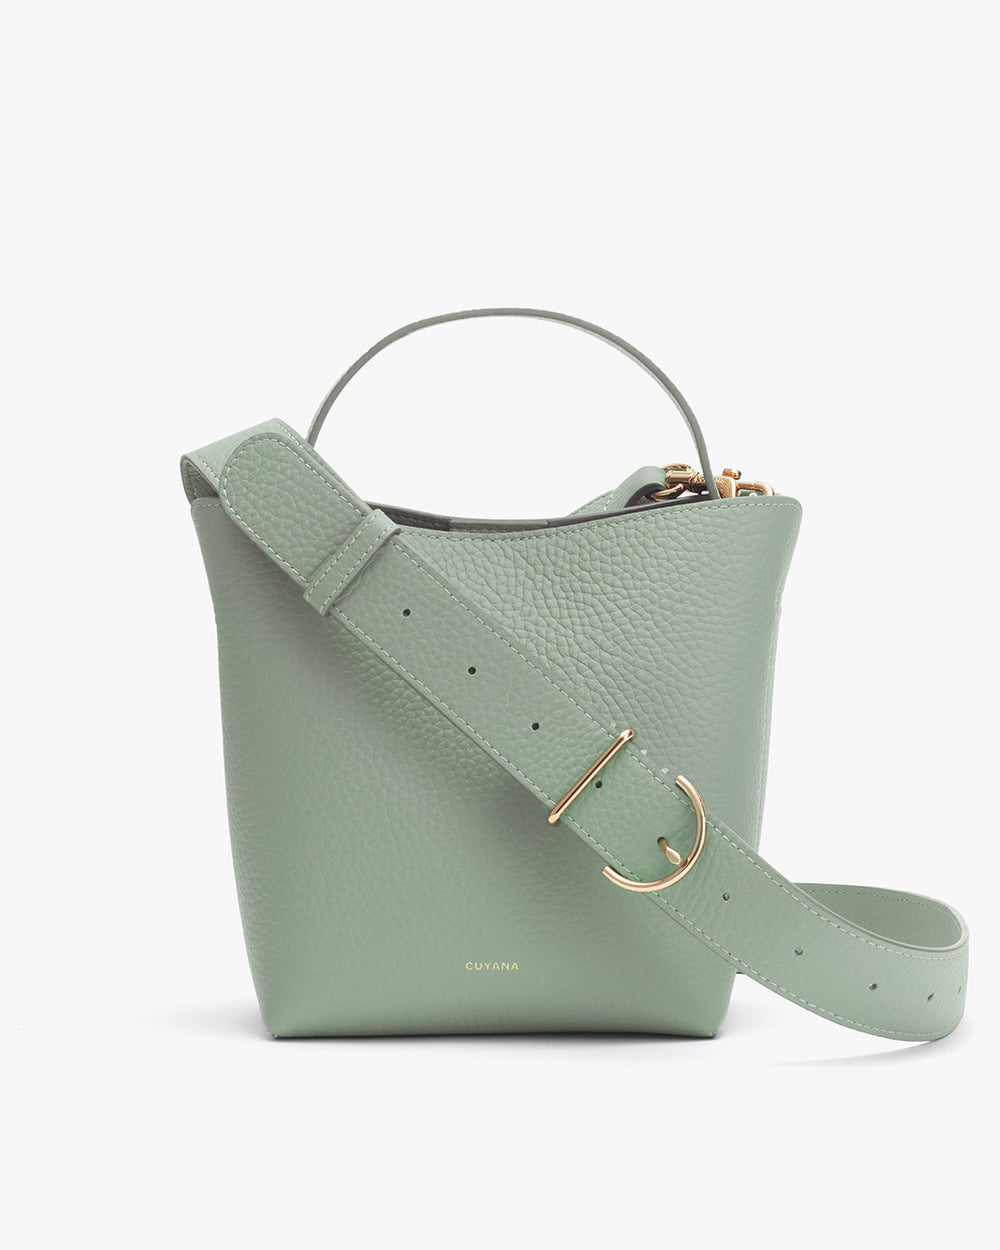 Handbag with a top handle and detachable shoulder strap